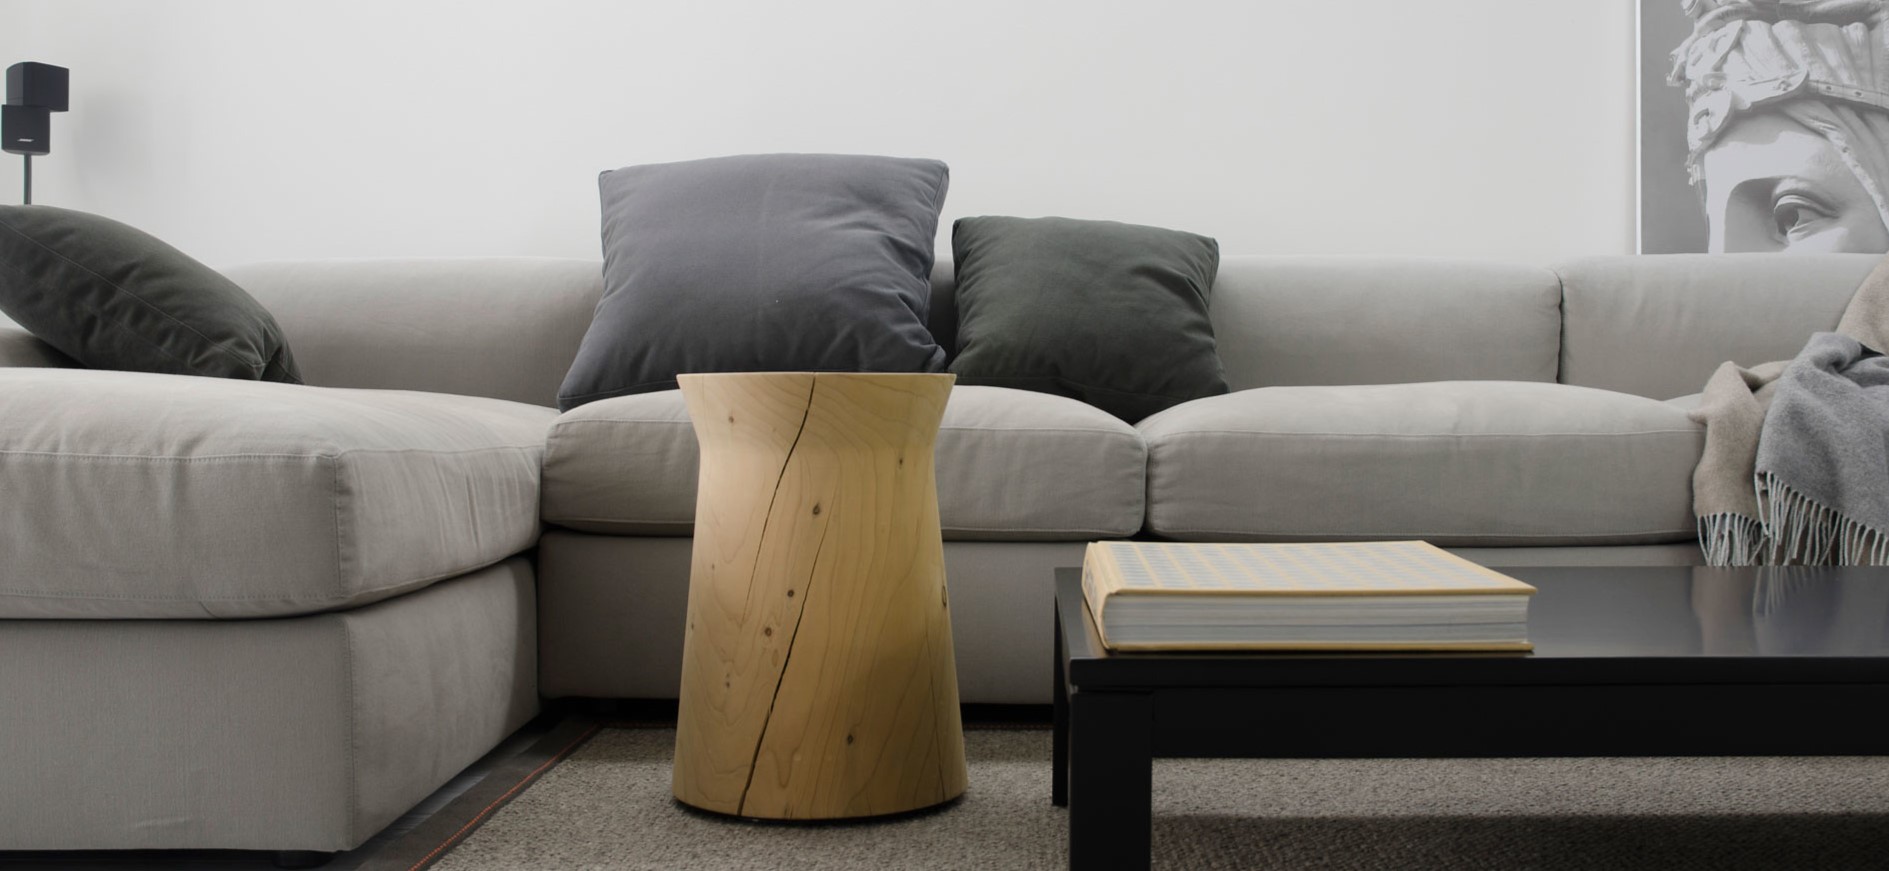 Серый диван можно использовать в интерьере минимализм или сканди